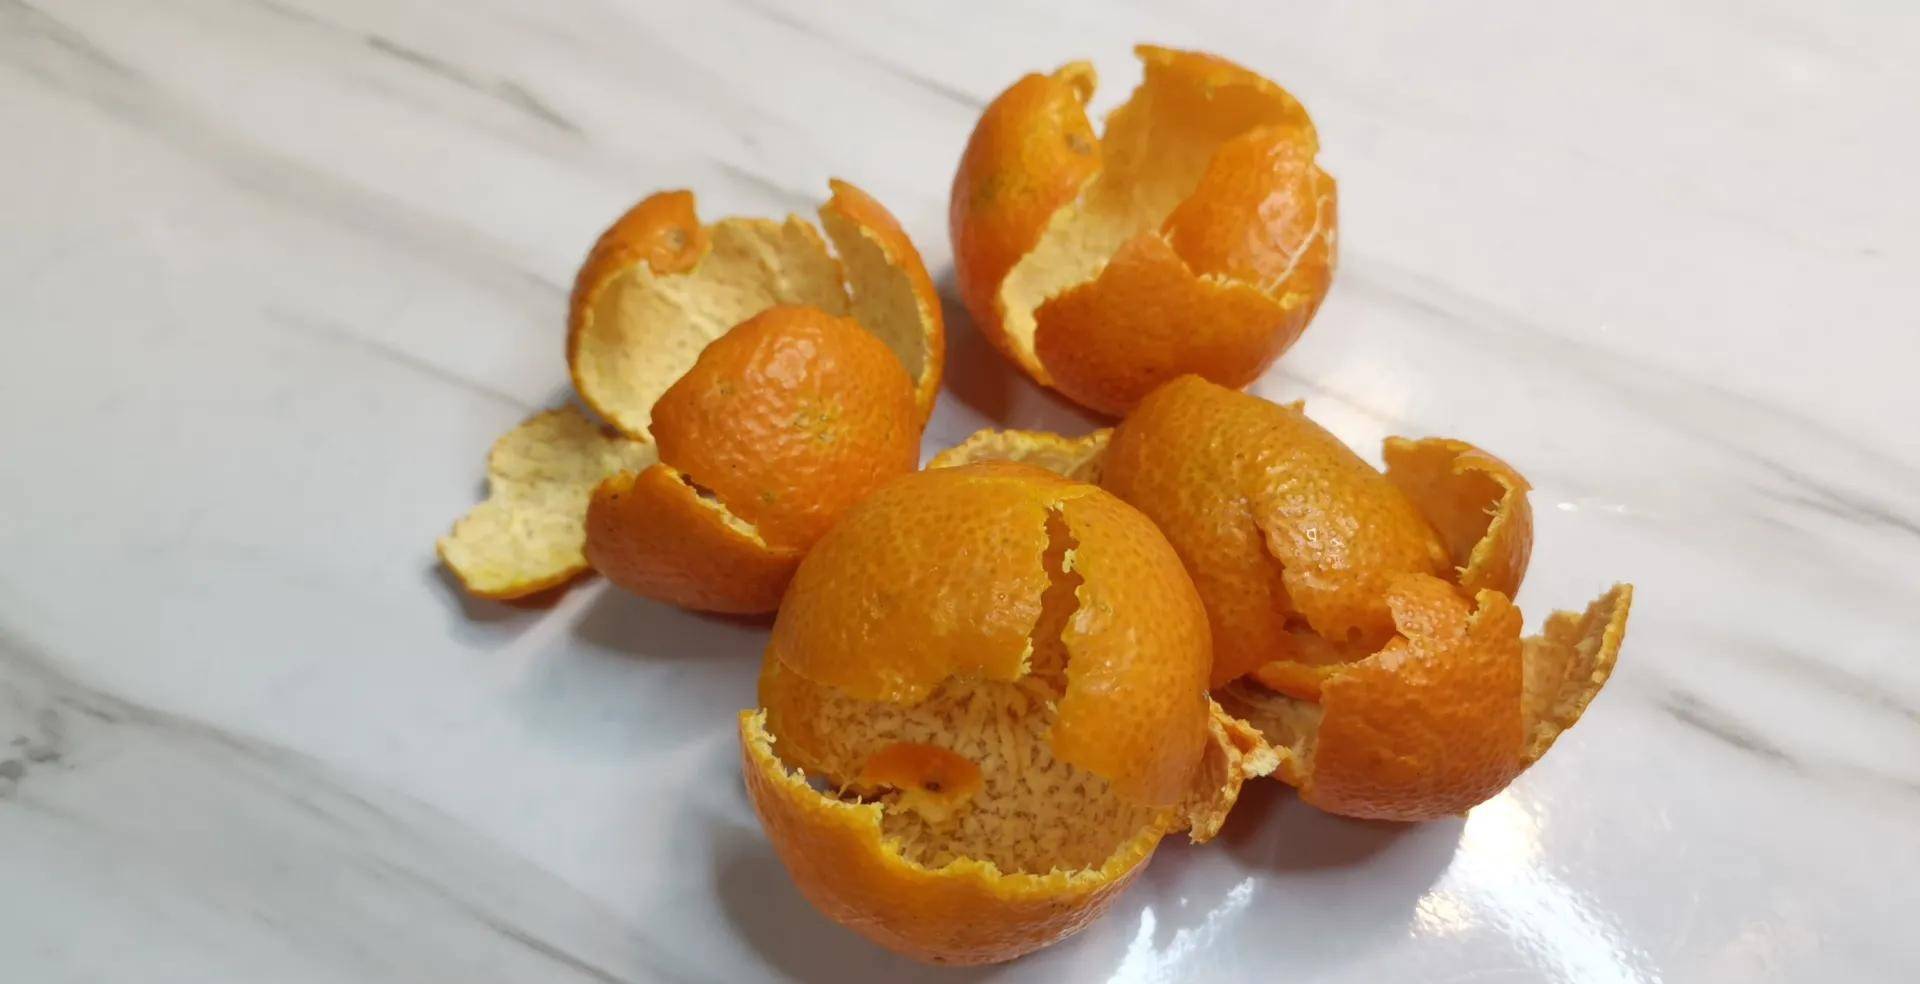 橘子皮不要丢,教你自制橘子精油,防蚊虫,缓解疲劳,比香水还好